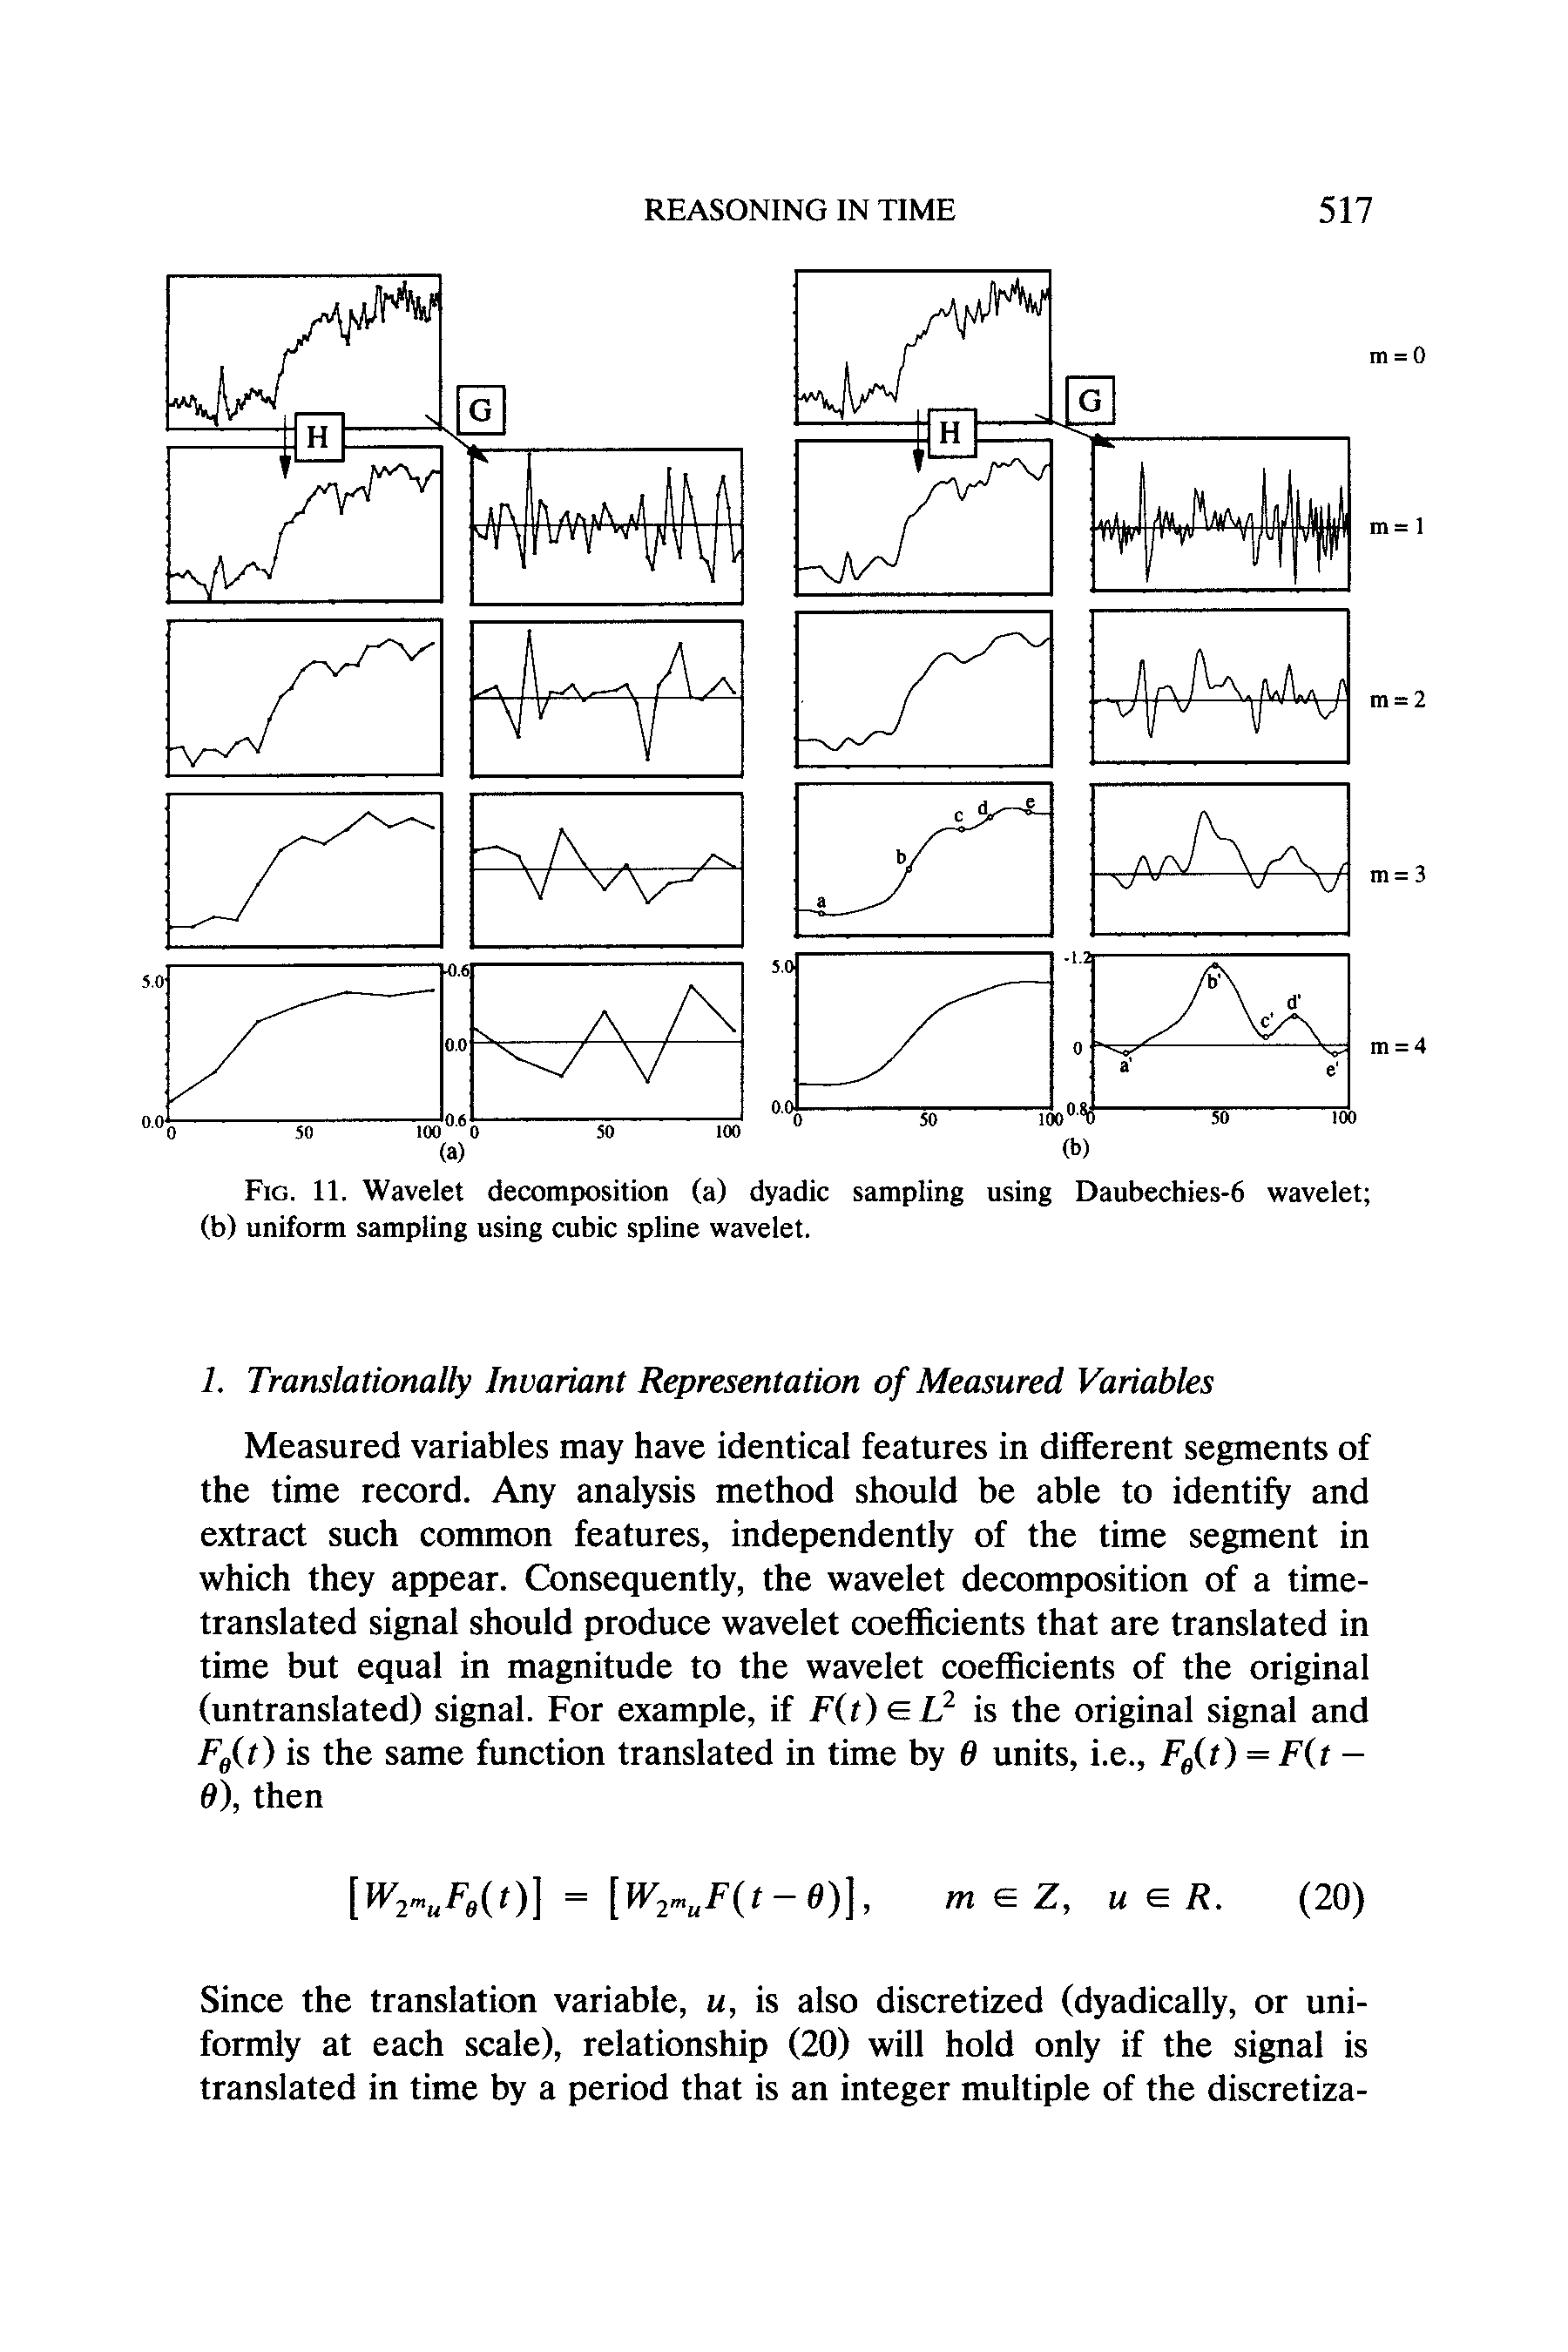 Fig. 11. Wavelet decomposition (a) dyadic sampling using Daubechies-6 wavelet (b) uniform sampling using cubic spline wavelet.